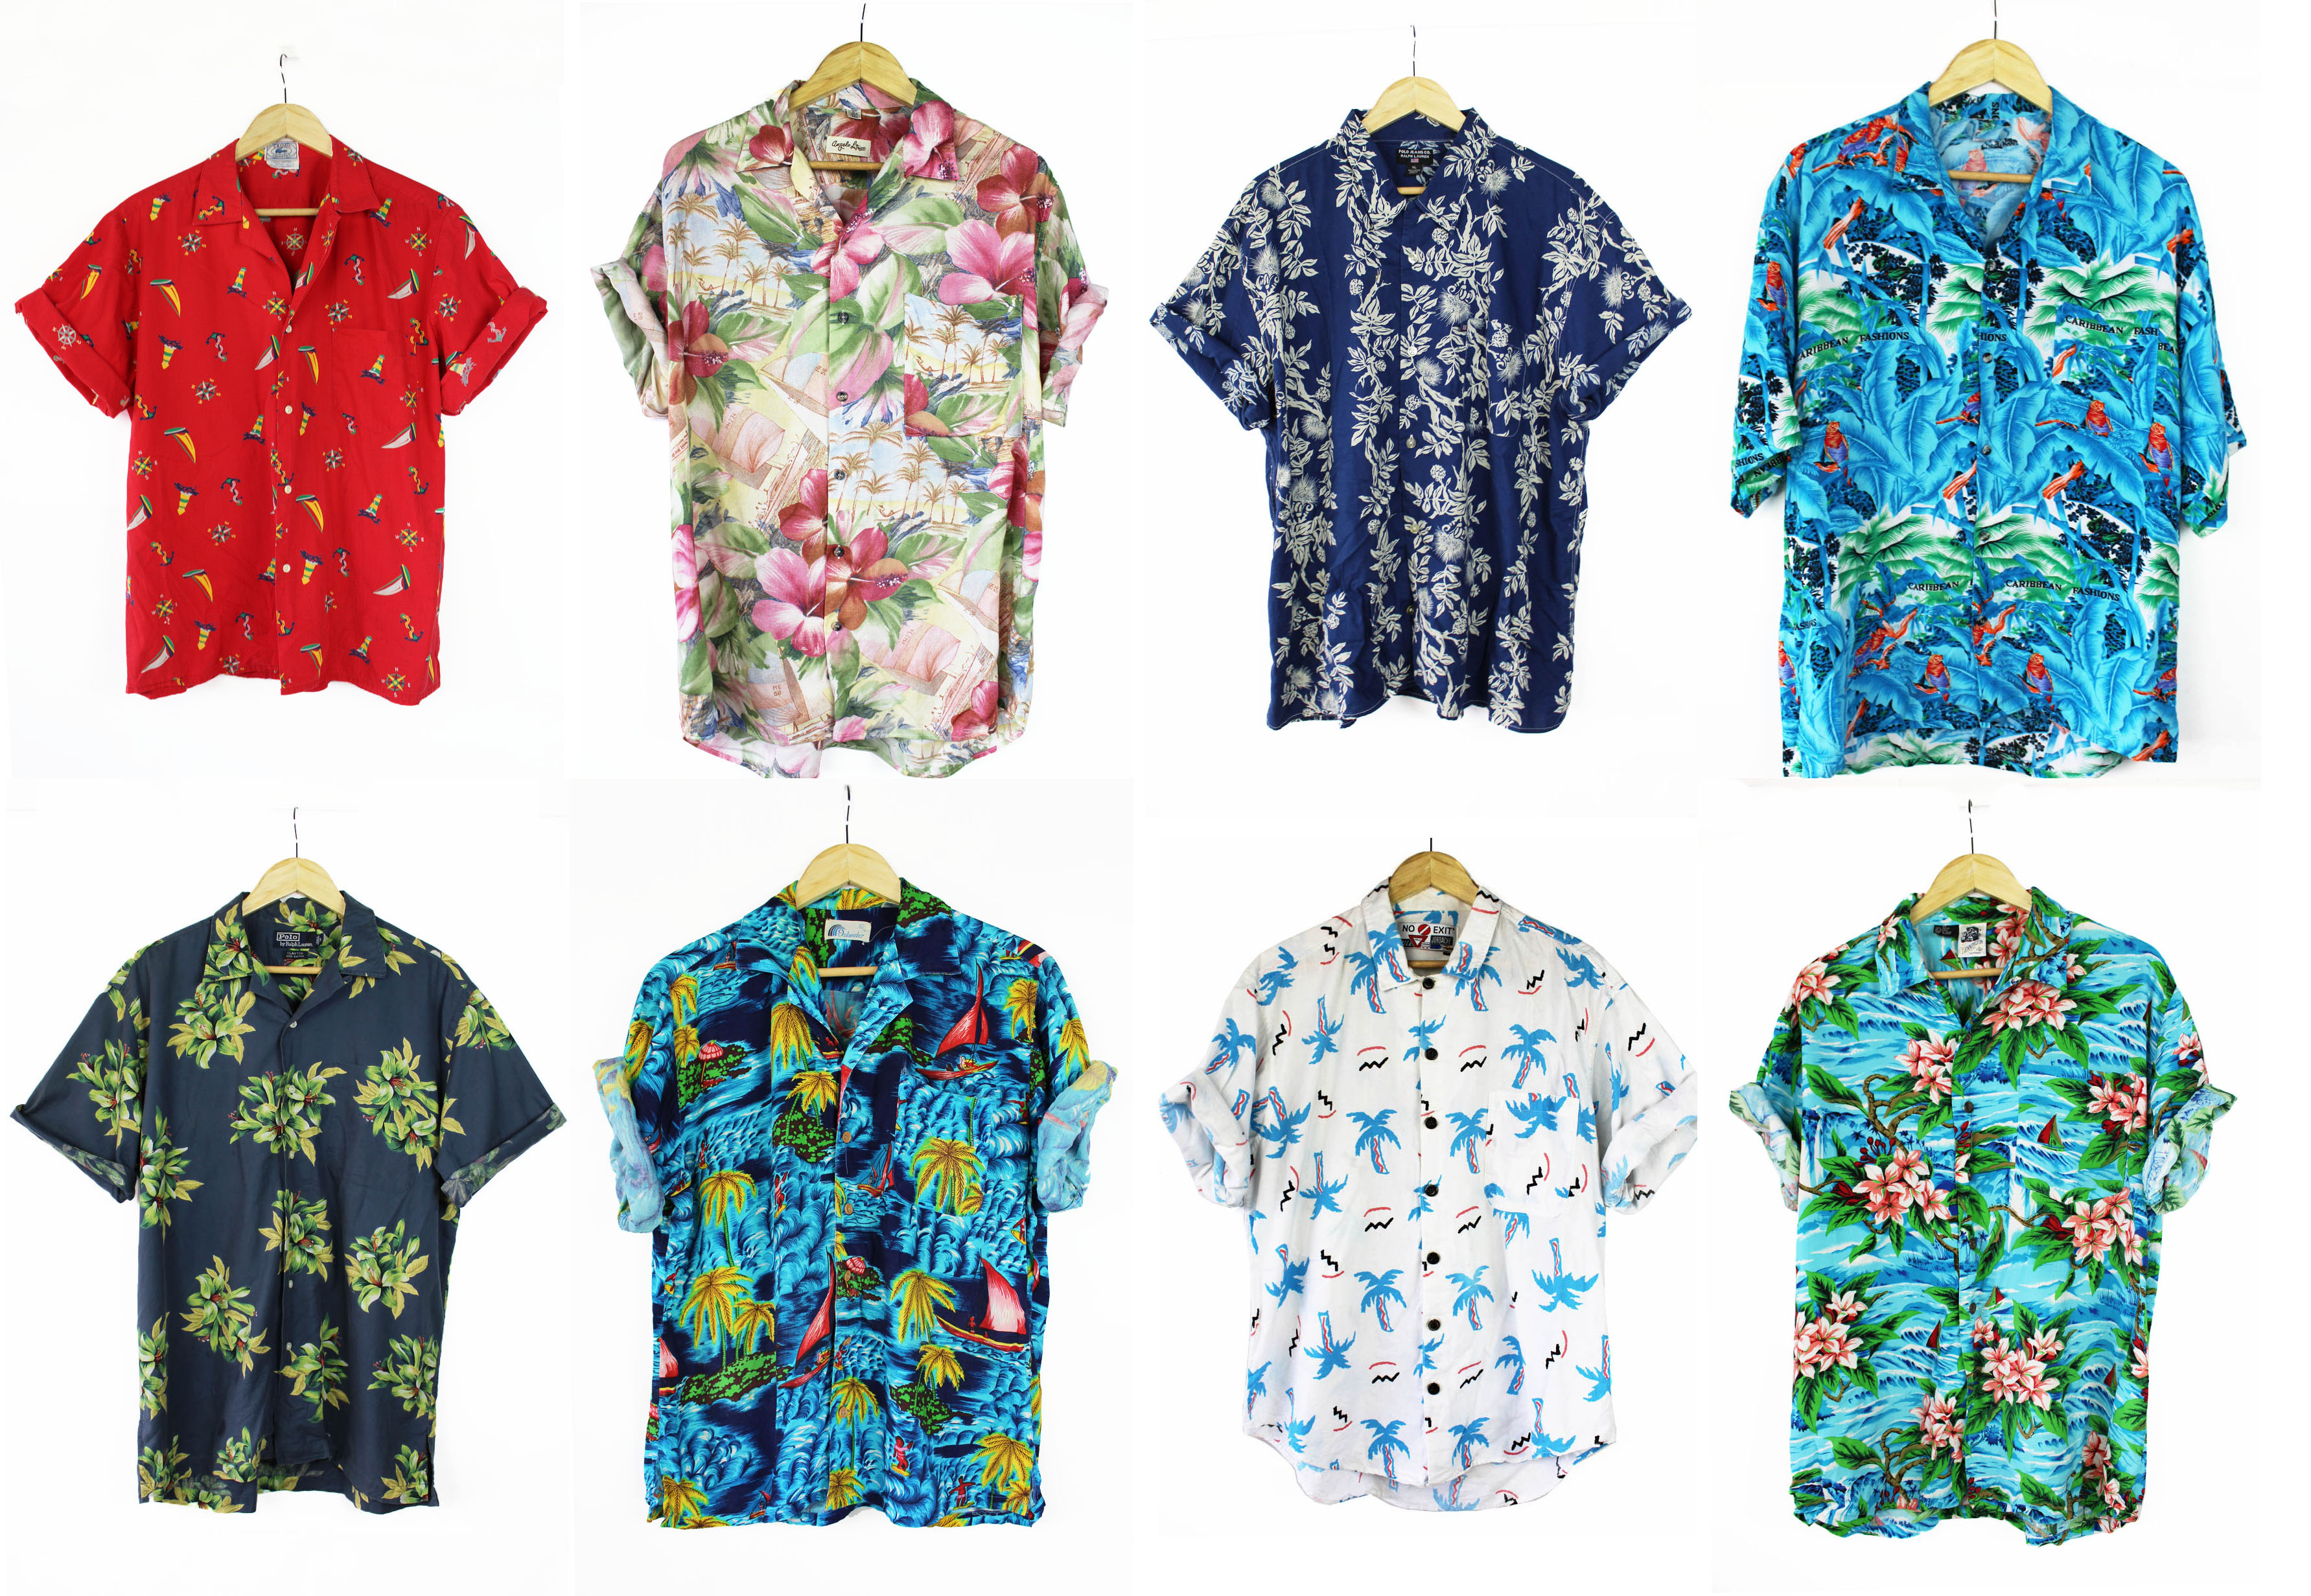 Buy la kings hawaiian shirt - 57% OFF 